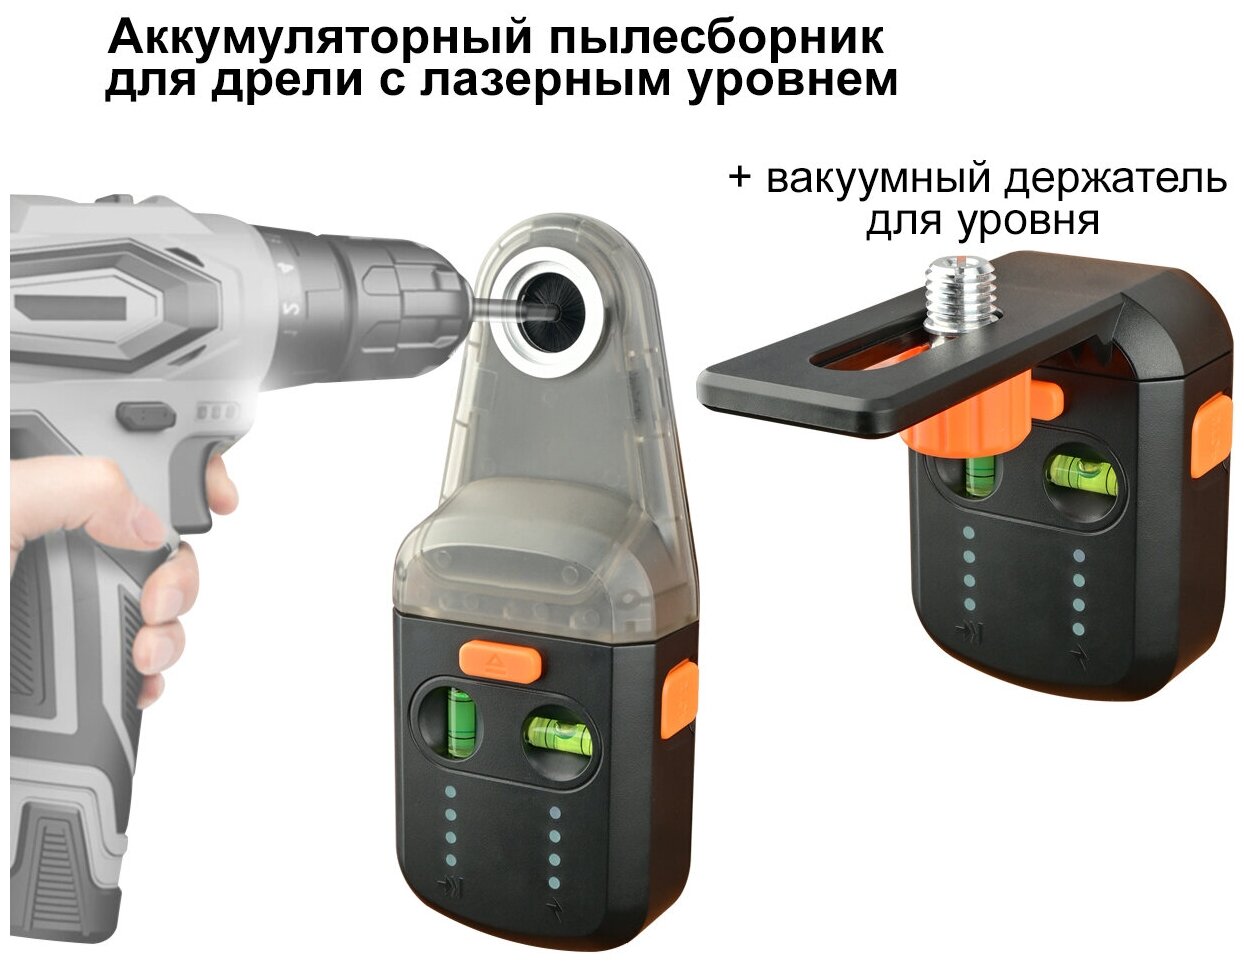 Аккумуляторный пылесборник для дрели и перфоратора с лазерным уровнем/держатель для уровня вакуумный GD517 - фотография № 5